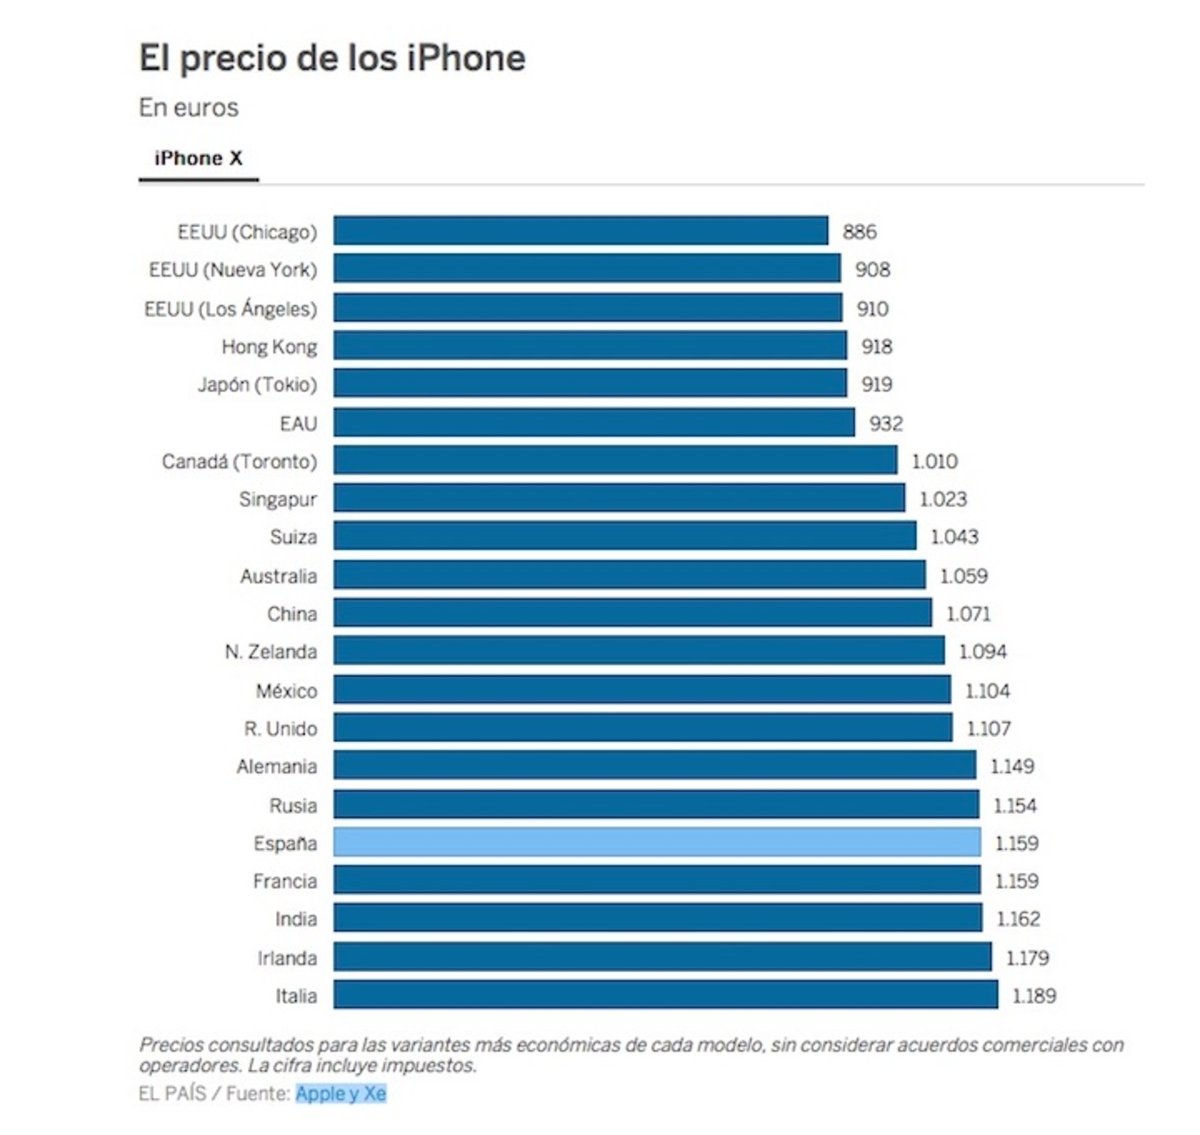 Vuelo a EEUU y iPhone X, más barato que comprarlo en España